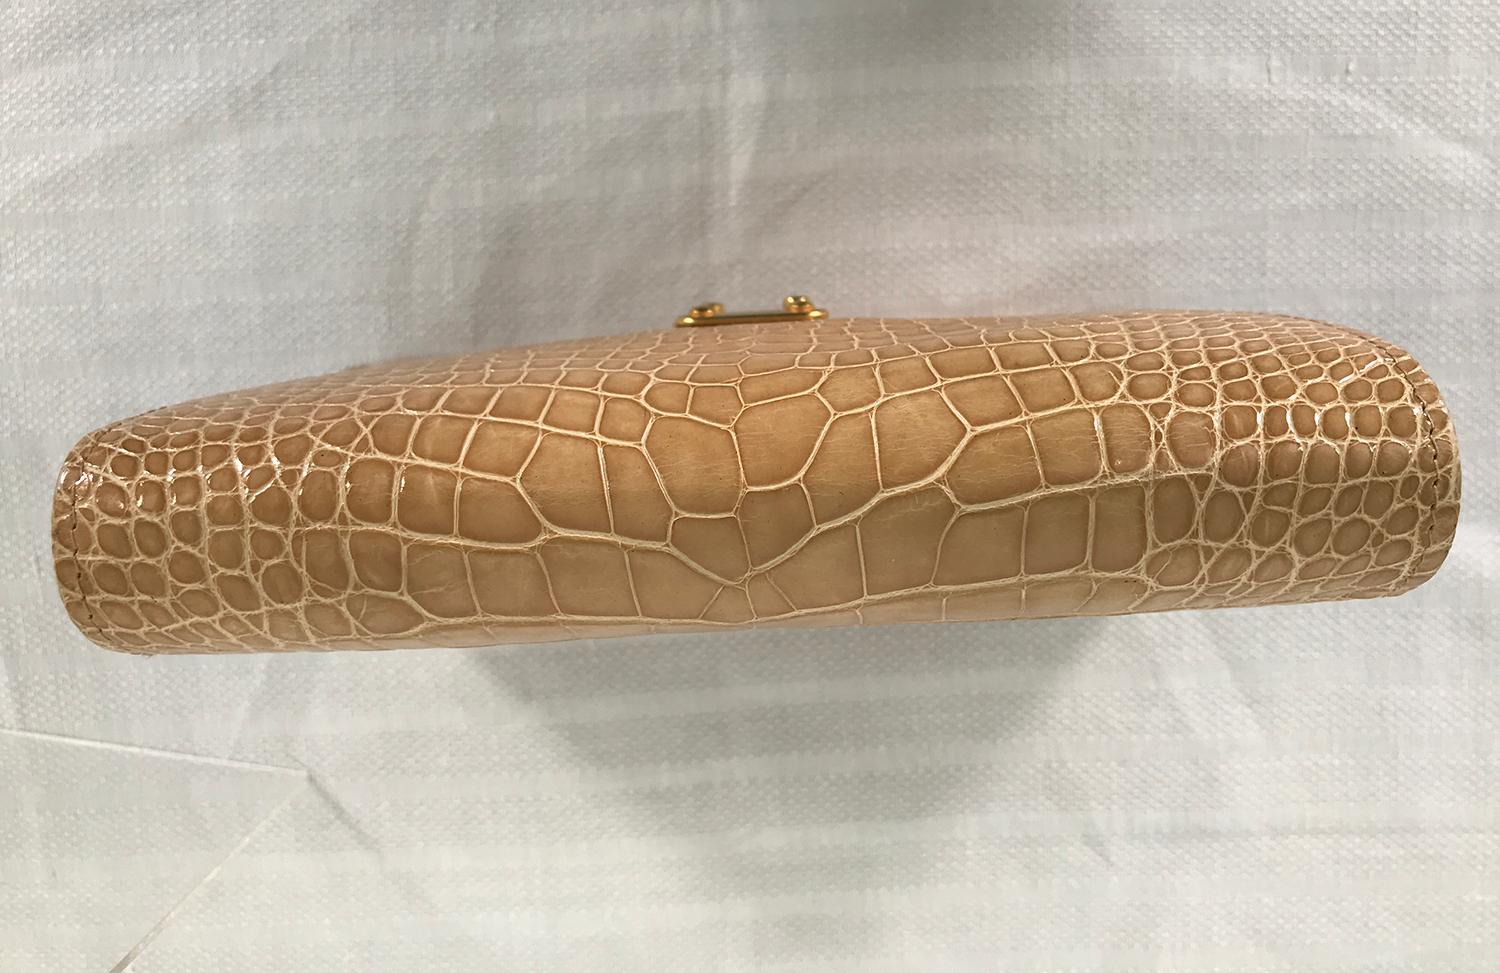 Lana of London Blond Alligator Clutch or Shoulder Bag For Sale 1